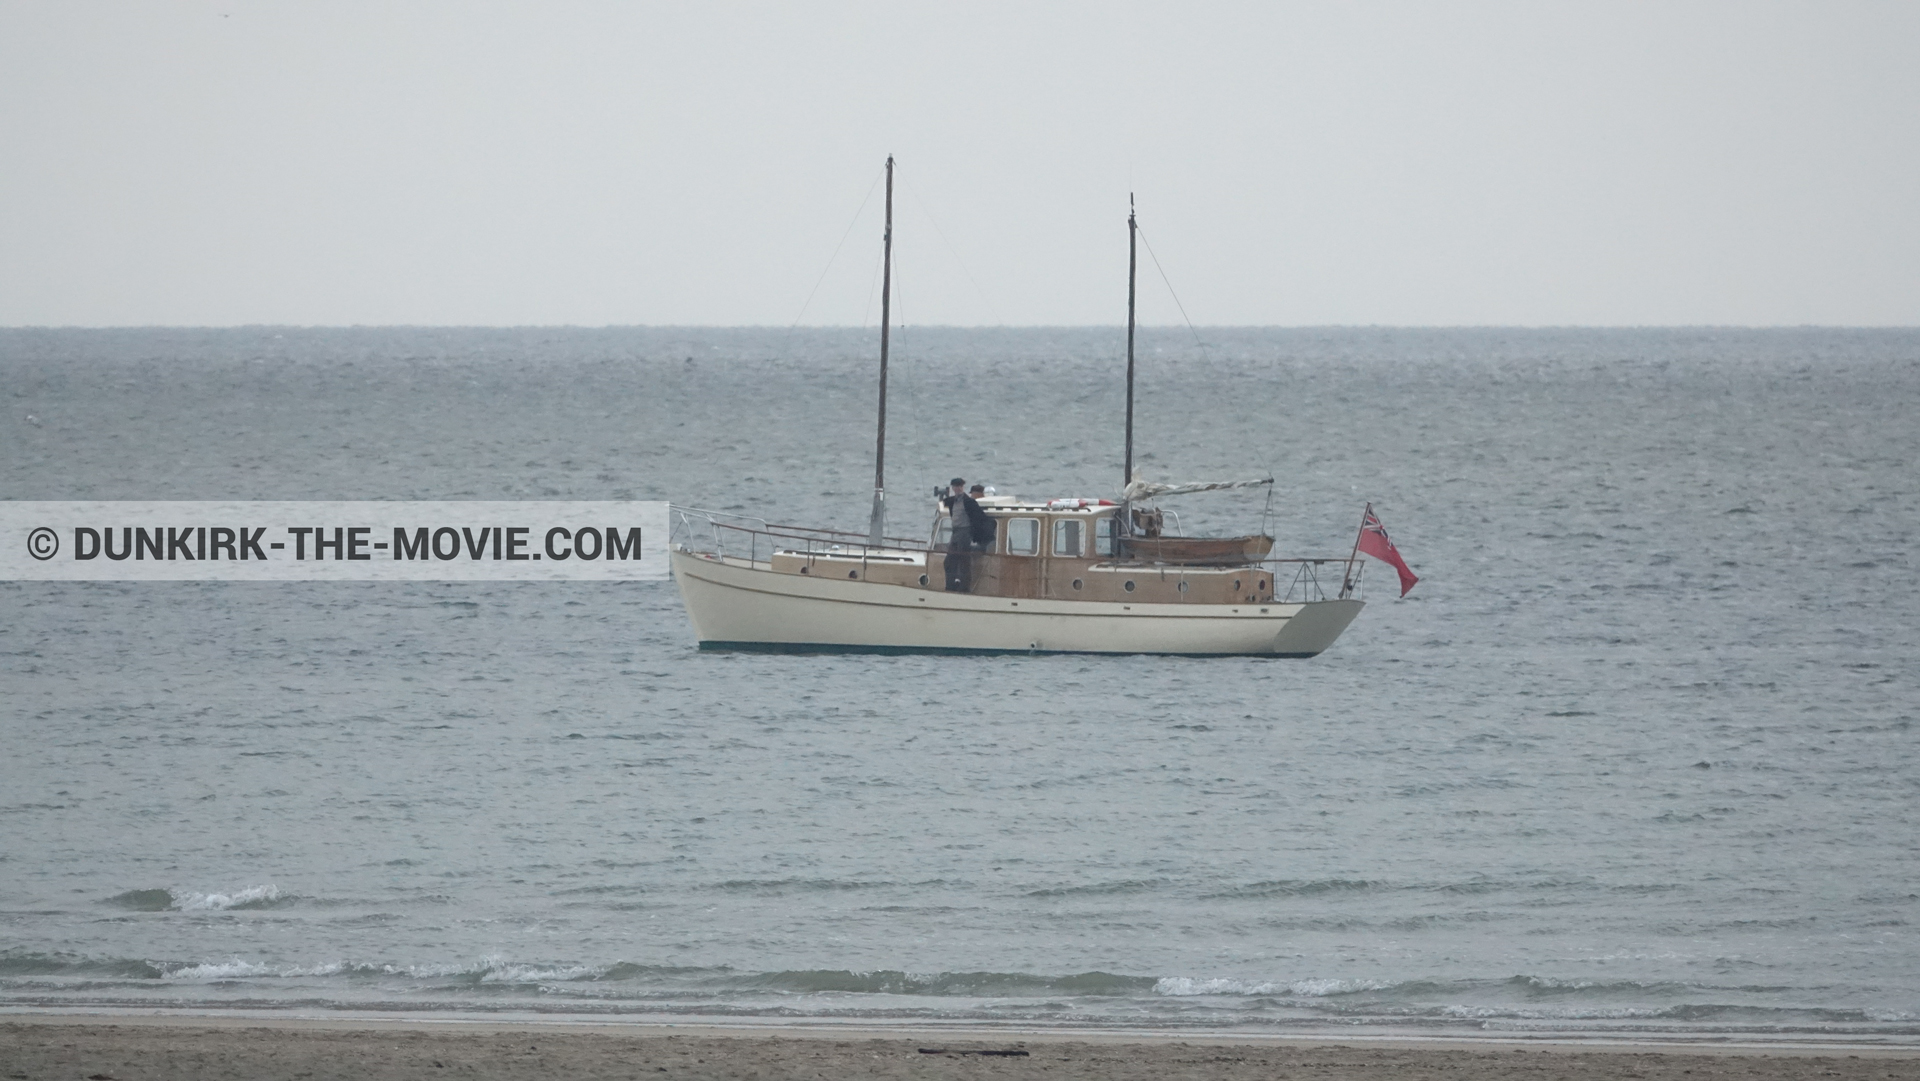 Photo avec plage, mer calme, figurants, ciel gris, bateau,  des dessous du Film Dunkerque de Nolan